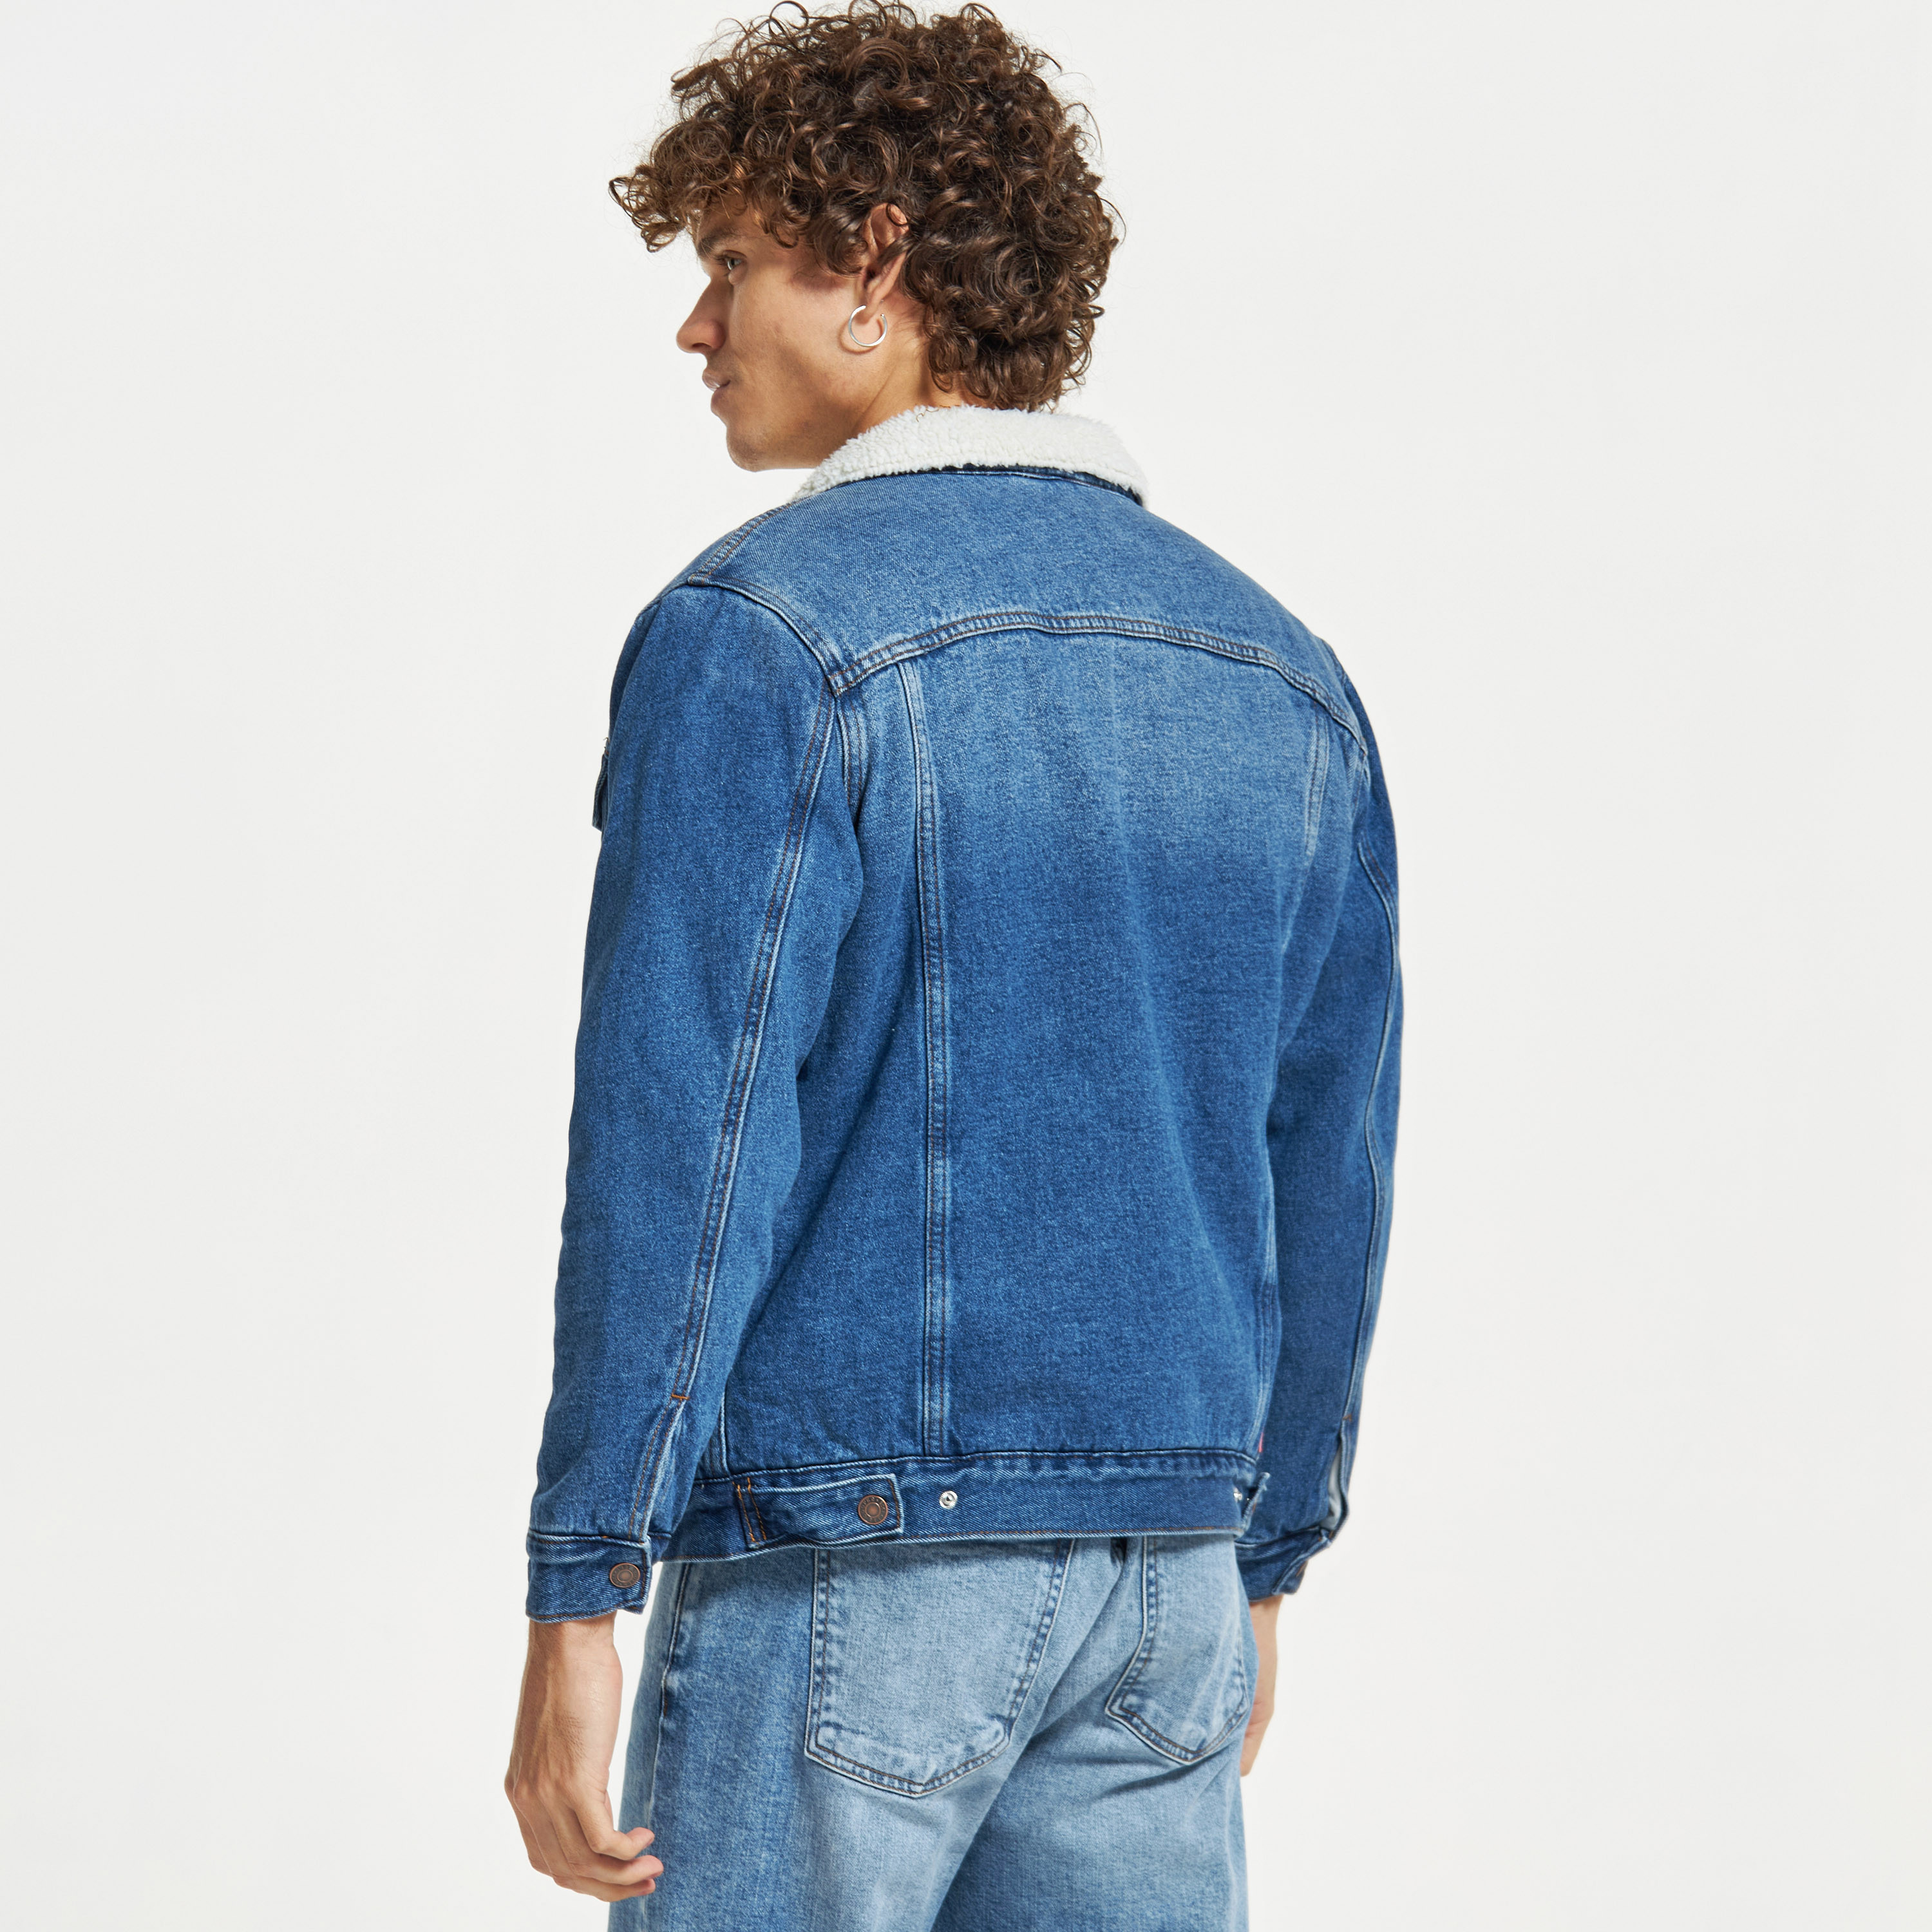 Lee Cooper - Thrifted vintage oversized cropped Lee Cooper denim jacket on  Designer Wardrobe